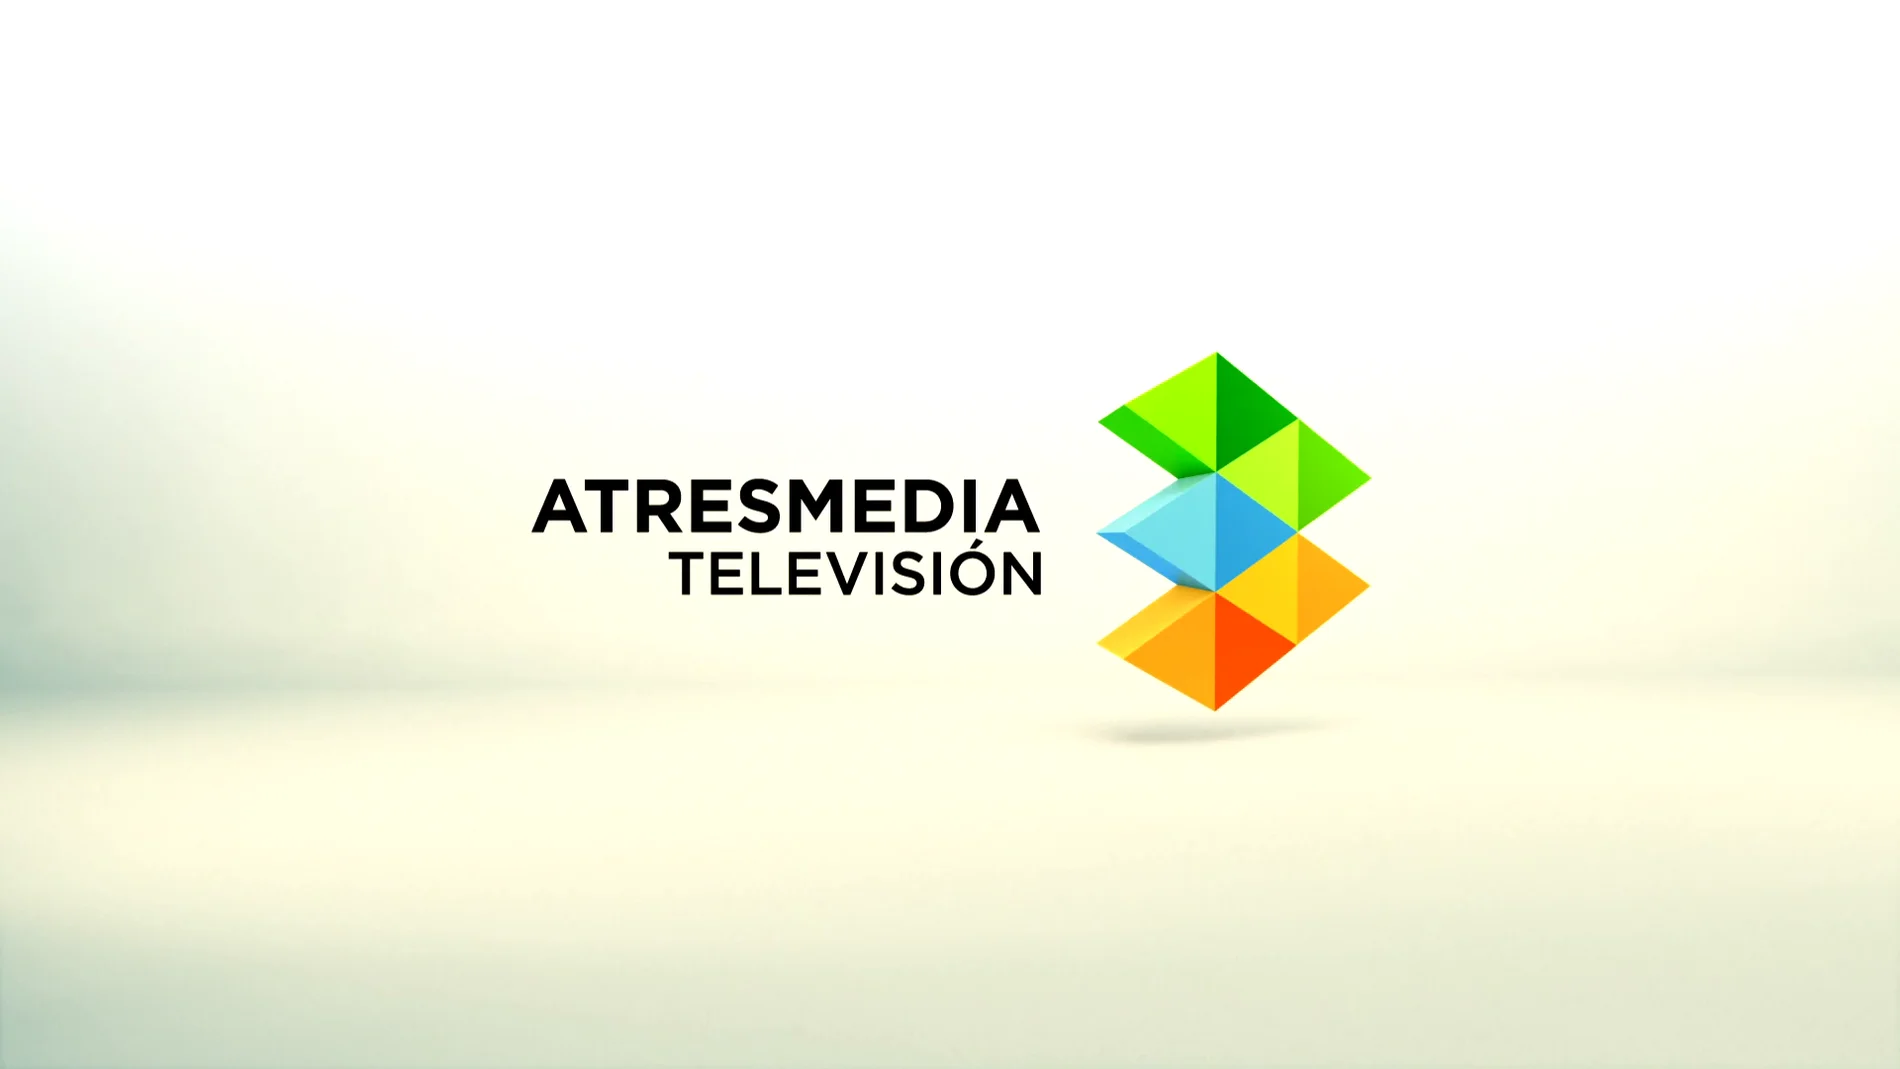 El Grupo Antena 3 ahora es Atresmedia